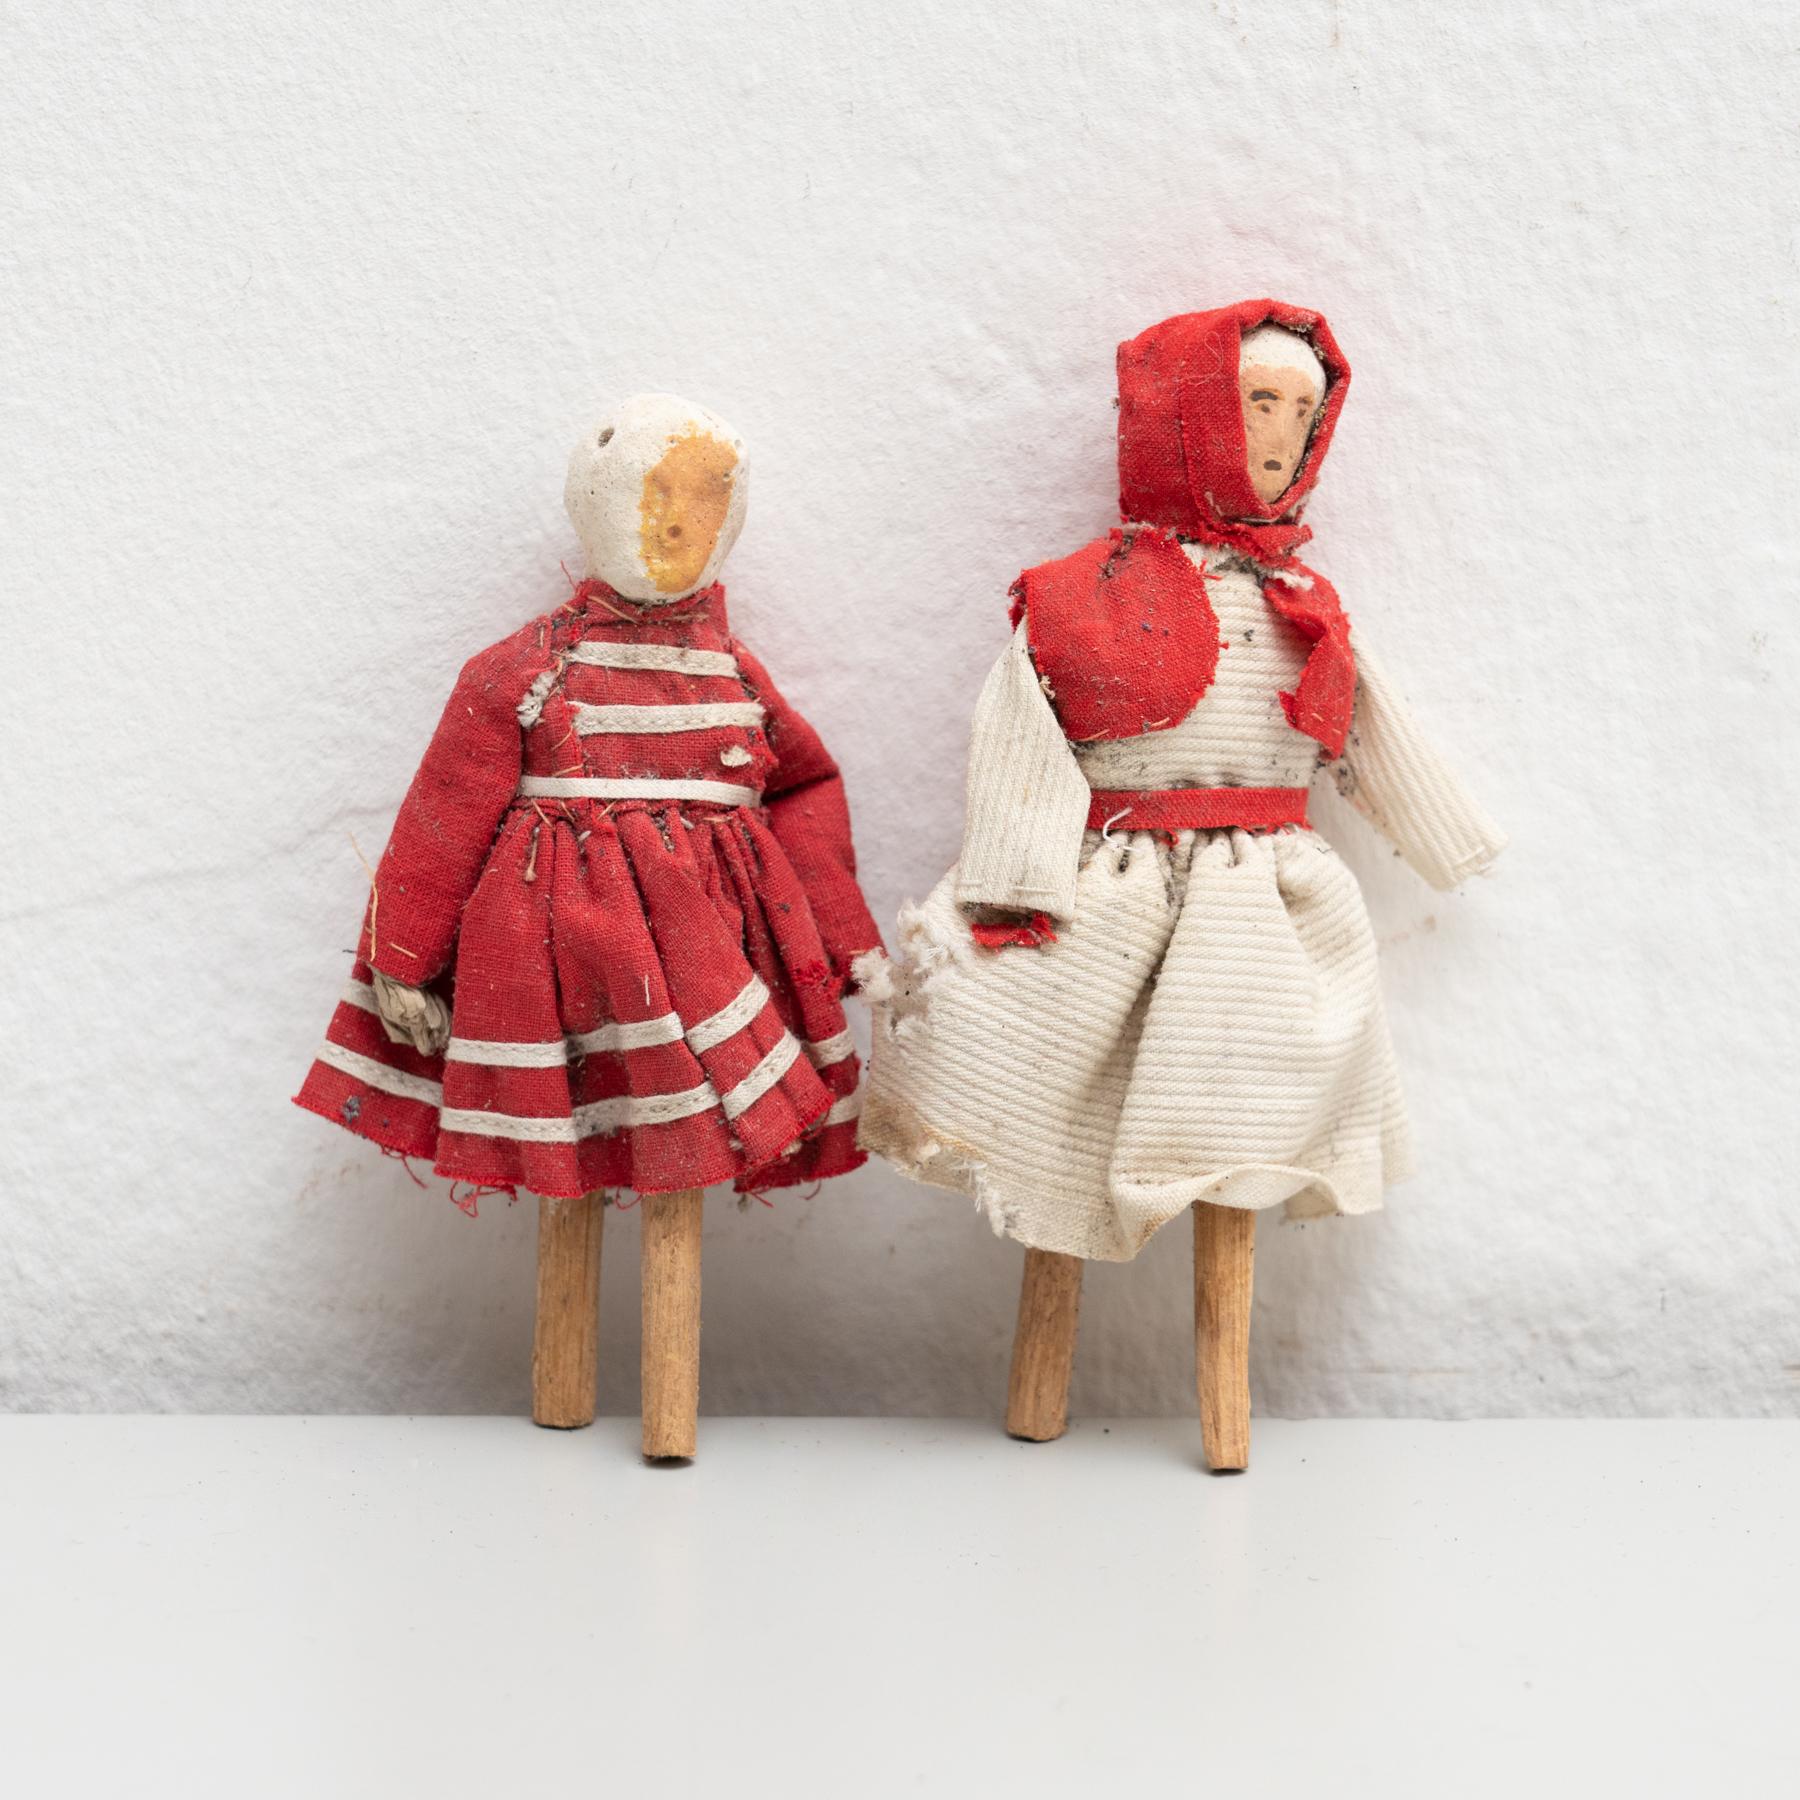 Paire de poupées de chiffon peintes à la main représentant deux femmes, datant du début du 20e siècle. 

Fabriqué vers 1920 en Espagne.

En état d'origine, avec une usure mineure conforme à l'âge et à l'utilisation, préservant une belle